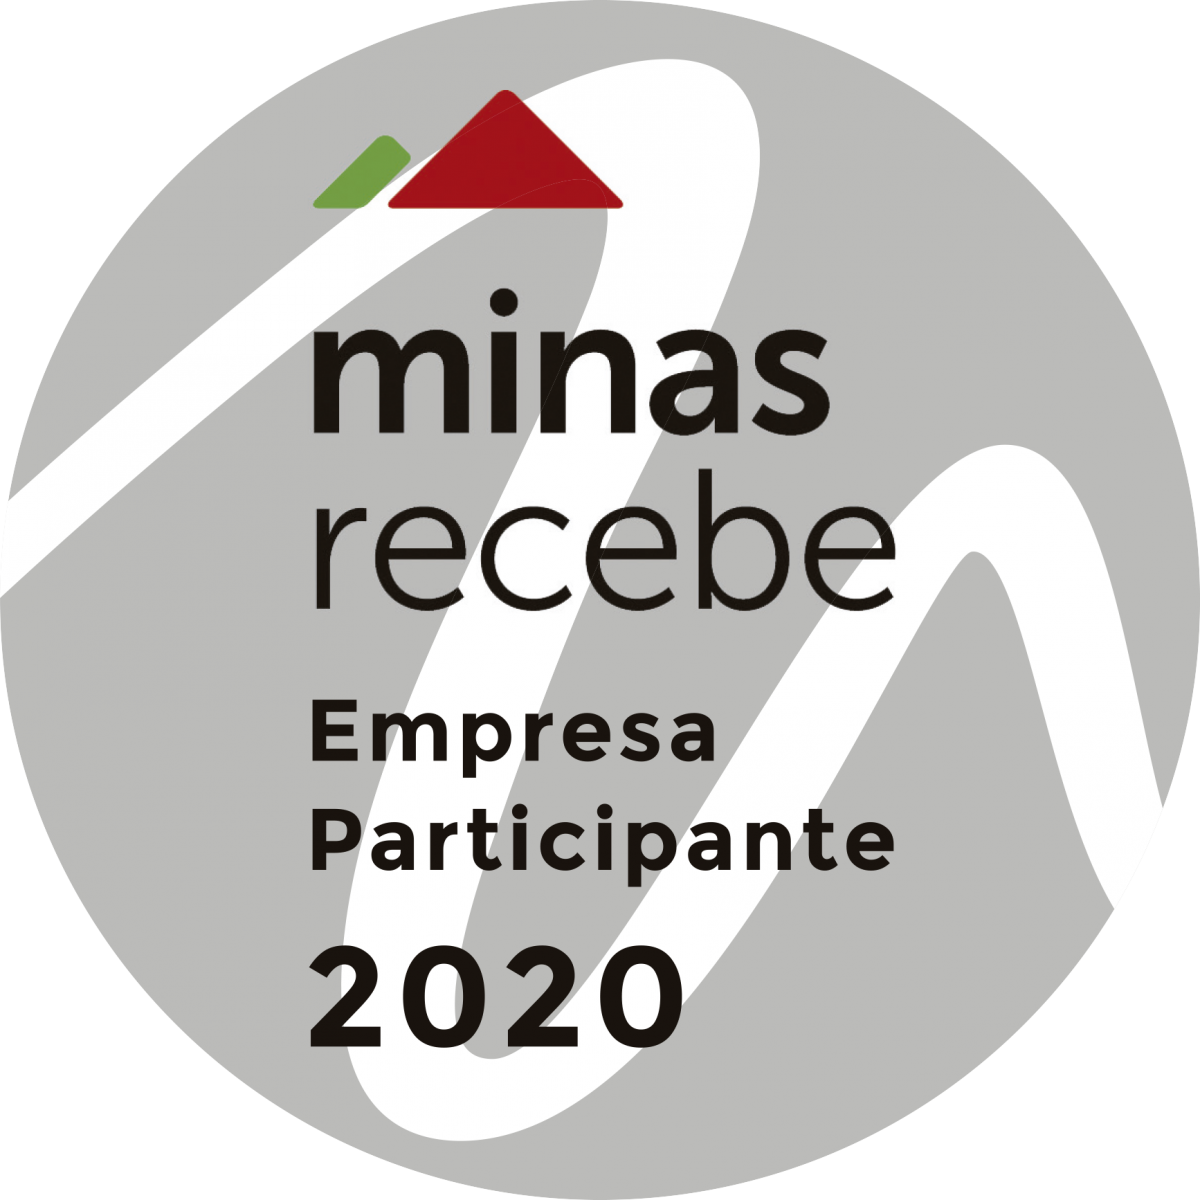 Programa Minas Recebe capacita e certifica empresas habilitadas em 2020